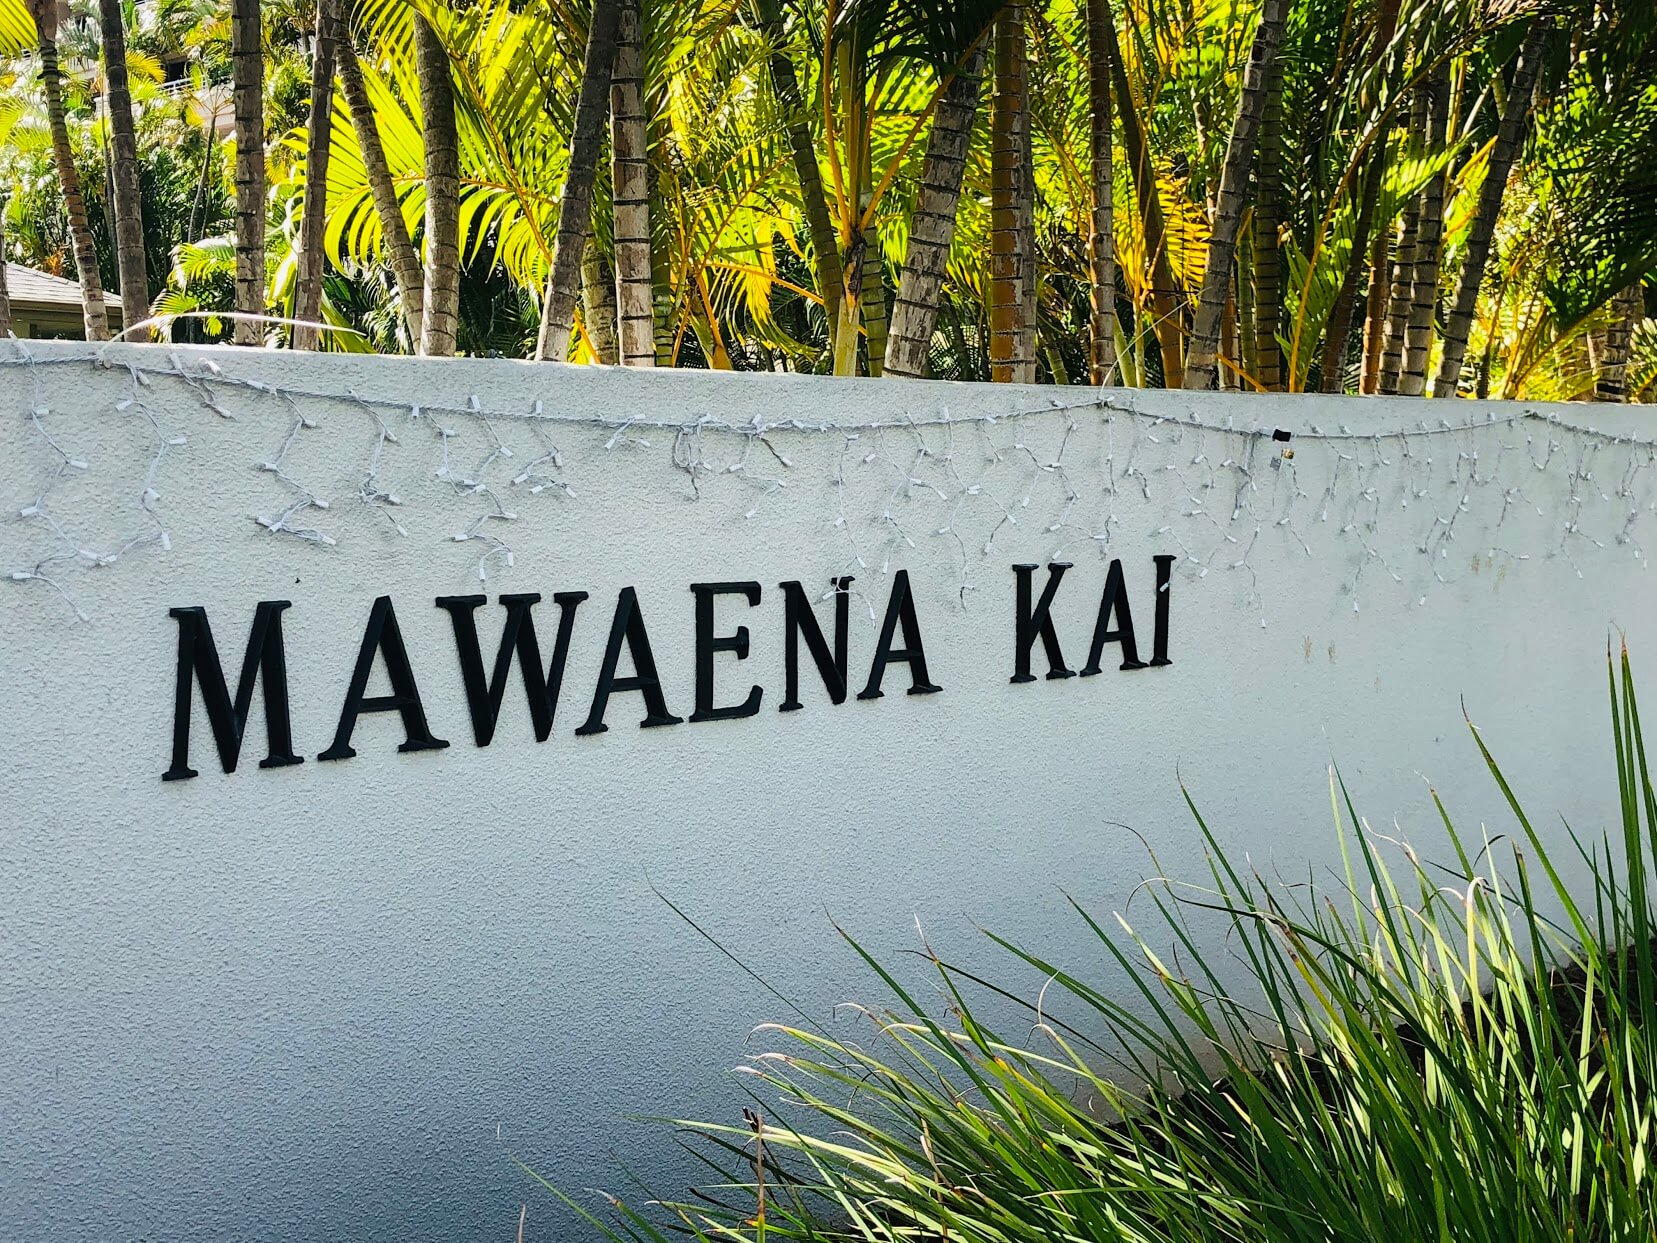 Mawaena Kaiの看板